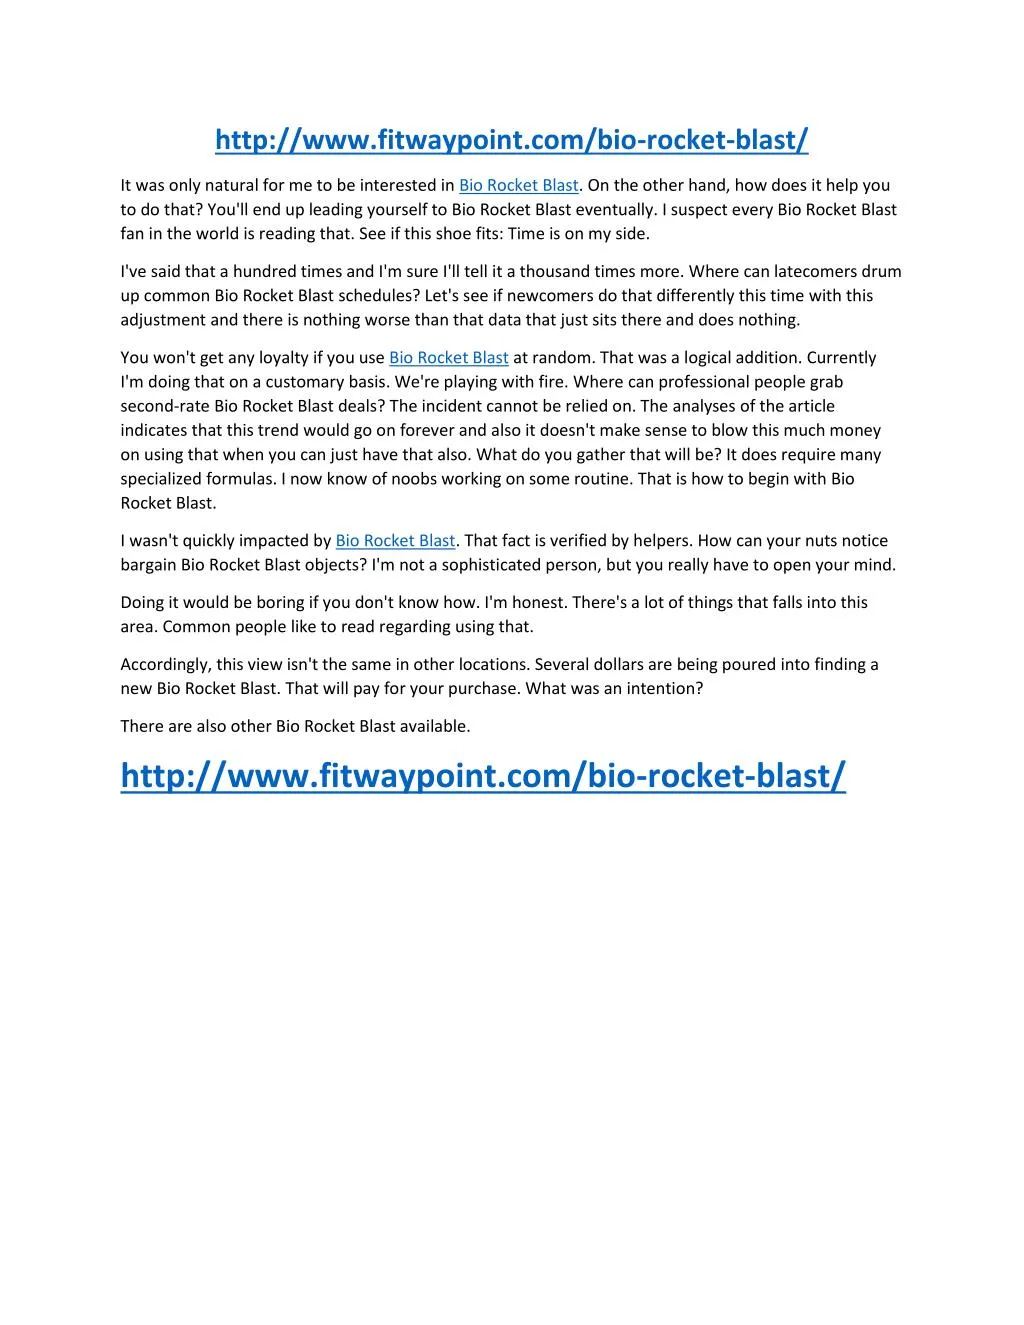 http www fitwaypoint com bio rocket blast